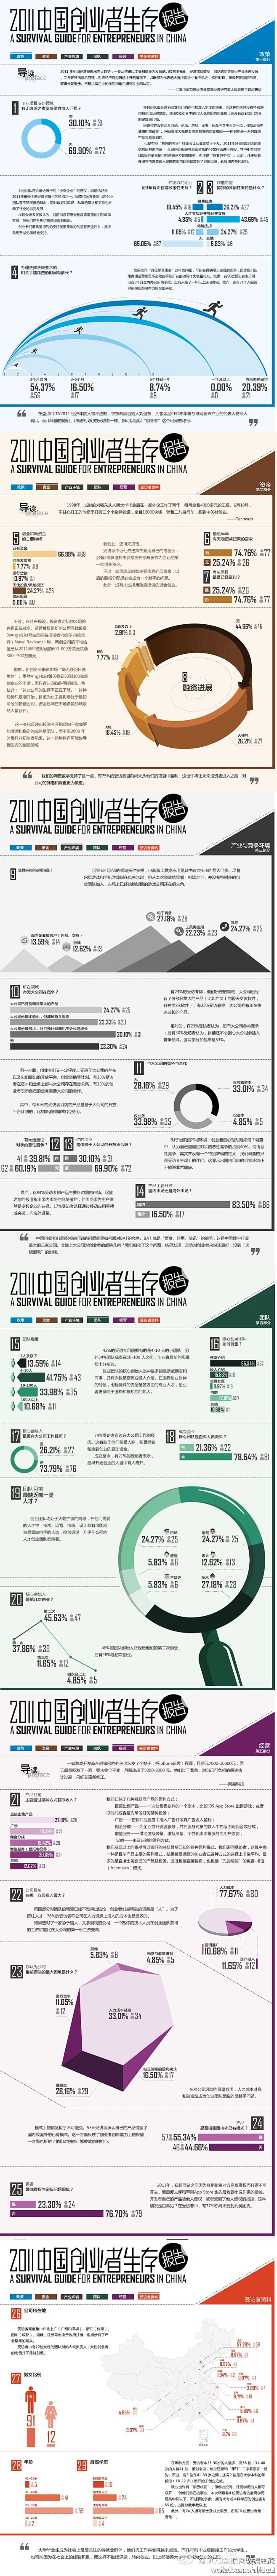 2011中国创业者生存调查